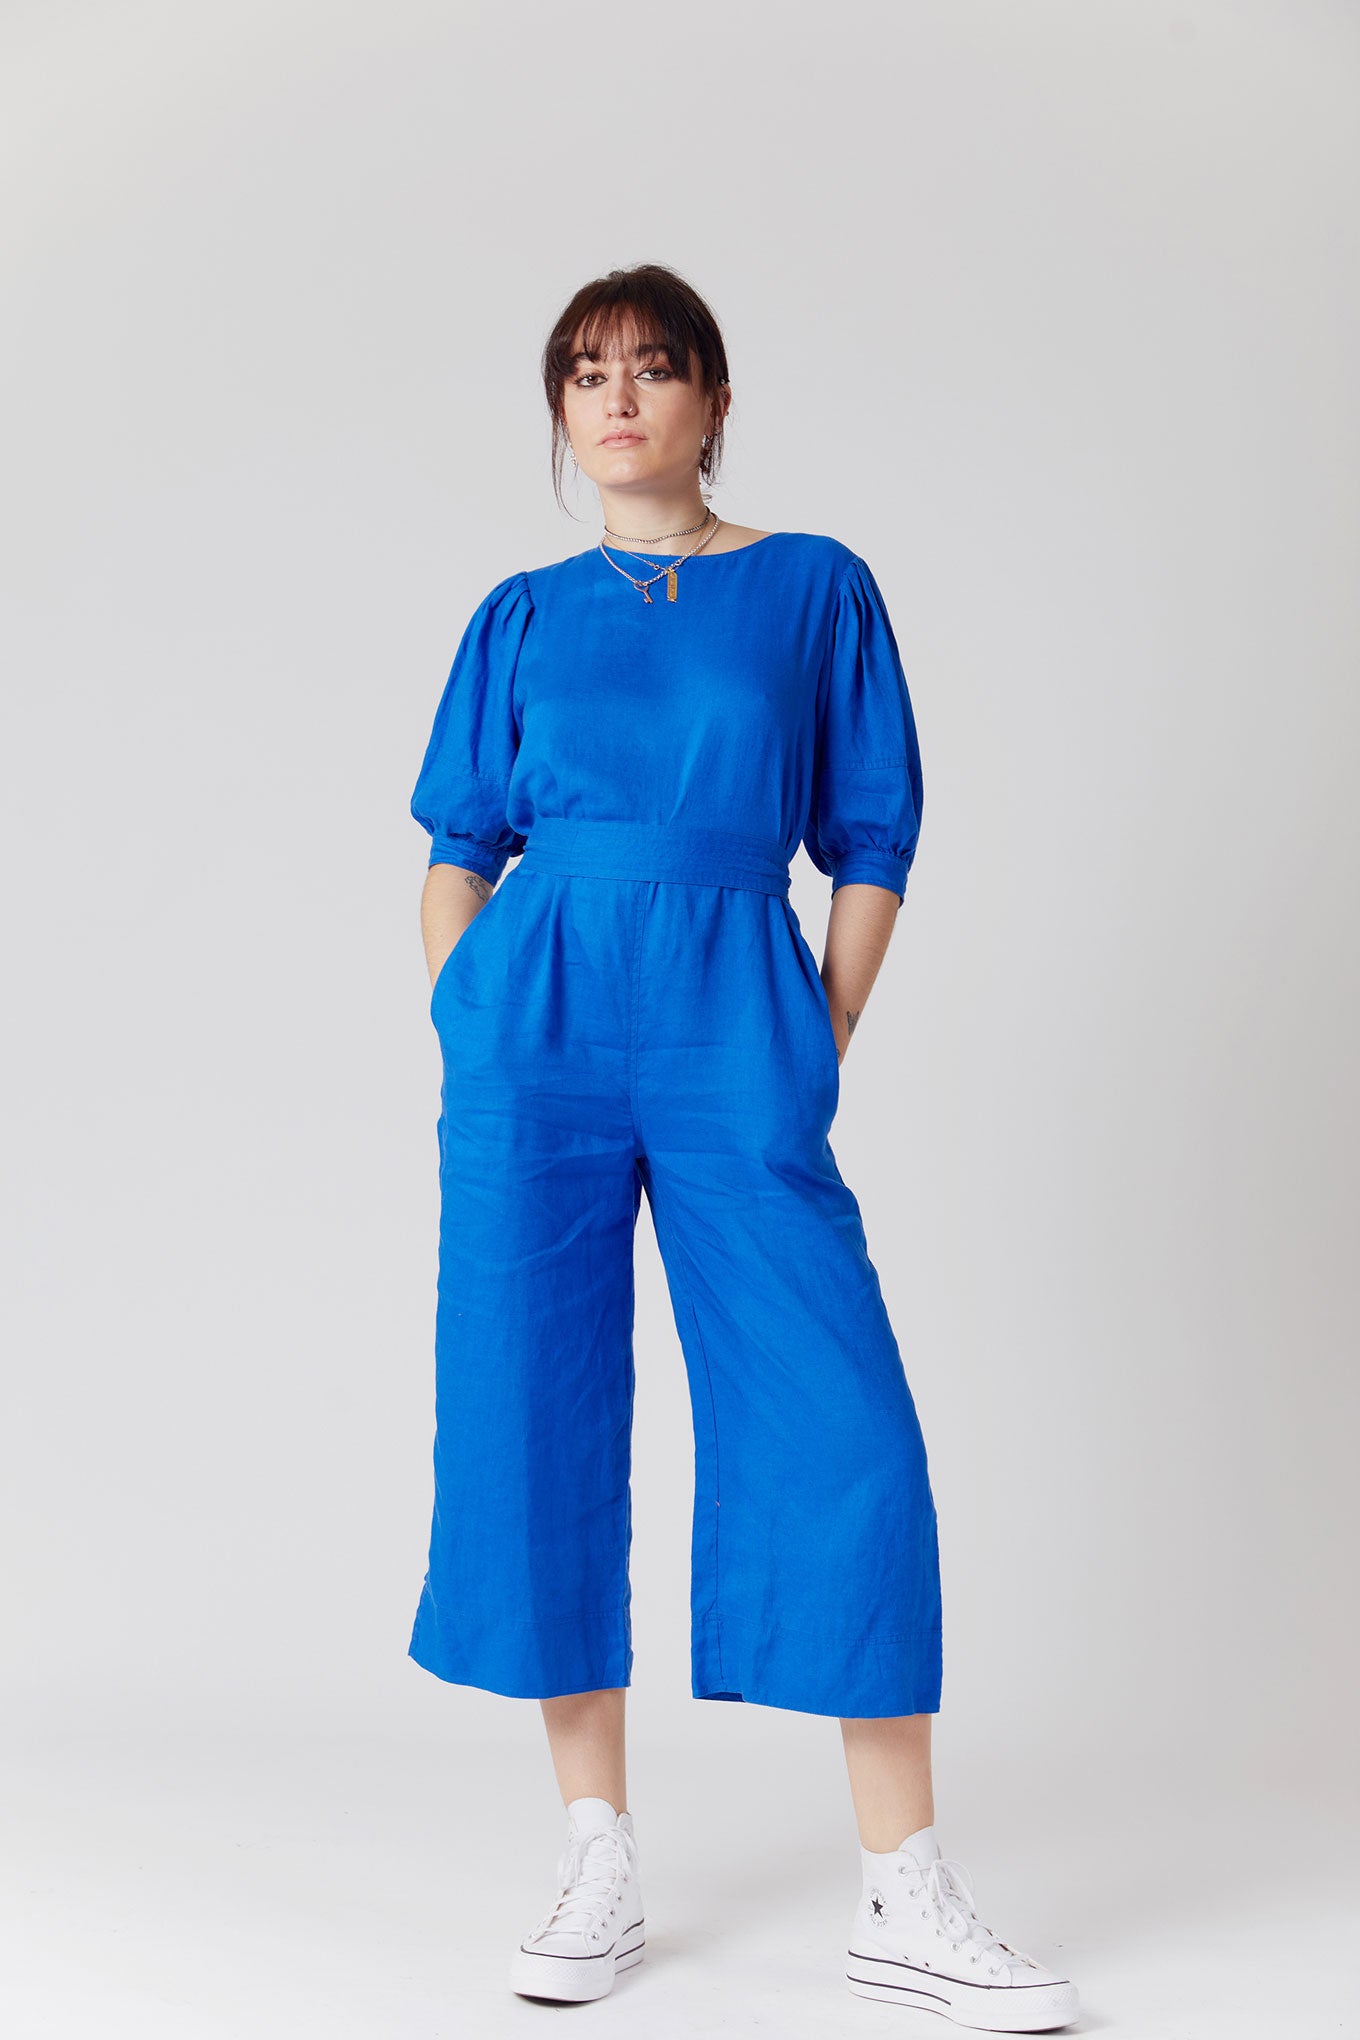 FAYE Organic Linen Jumpsuit Blue, SIZE 5 / UK 16 / EUR 44